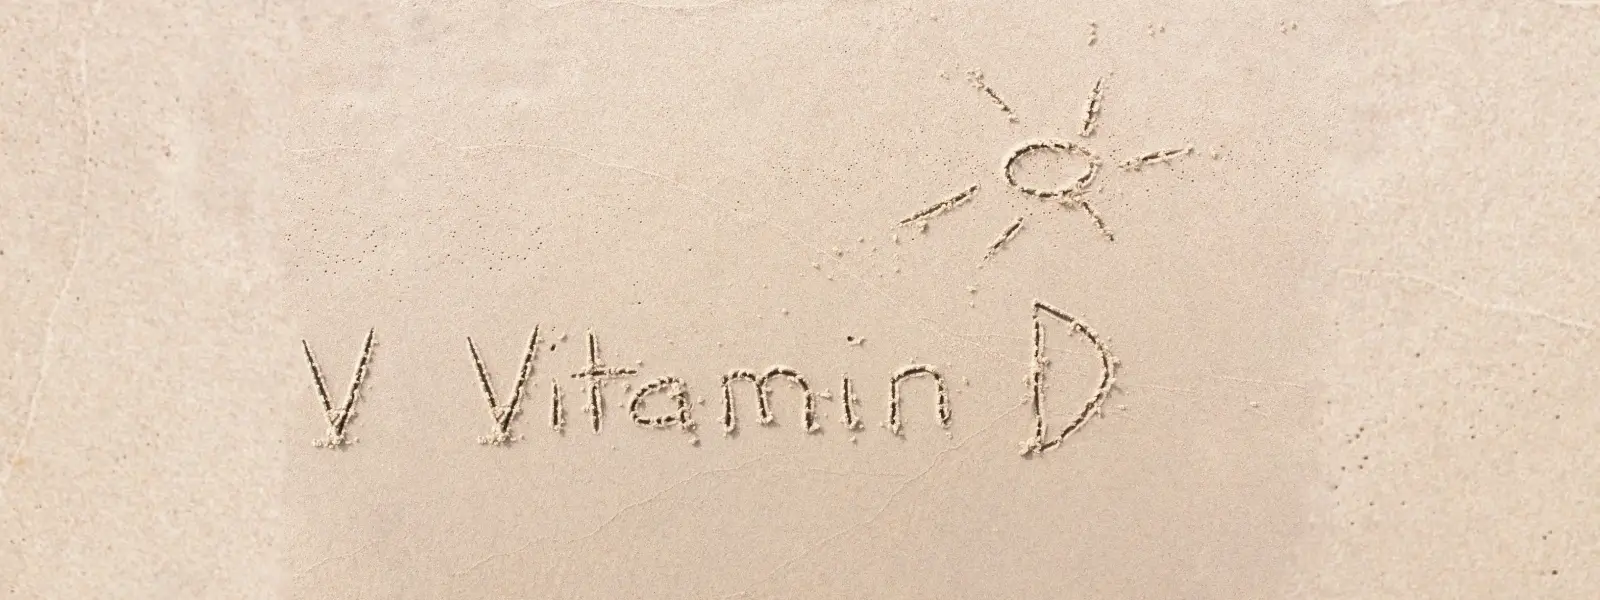 D Vitamini Nedir?